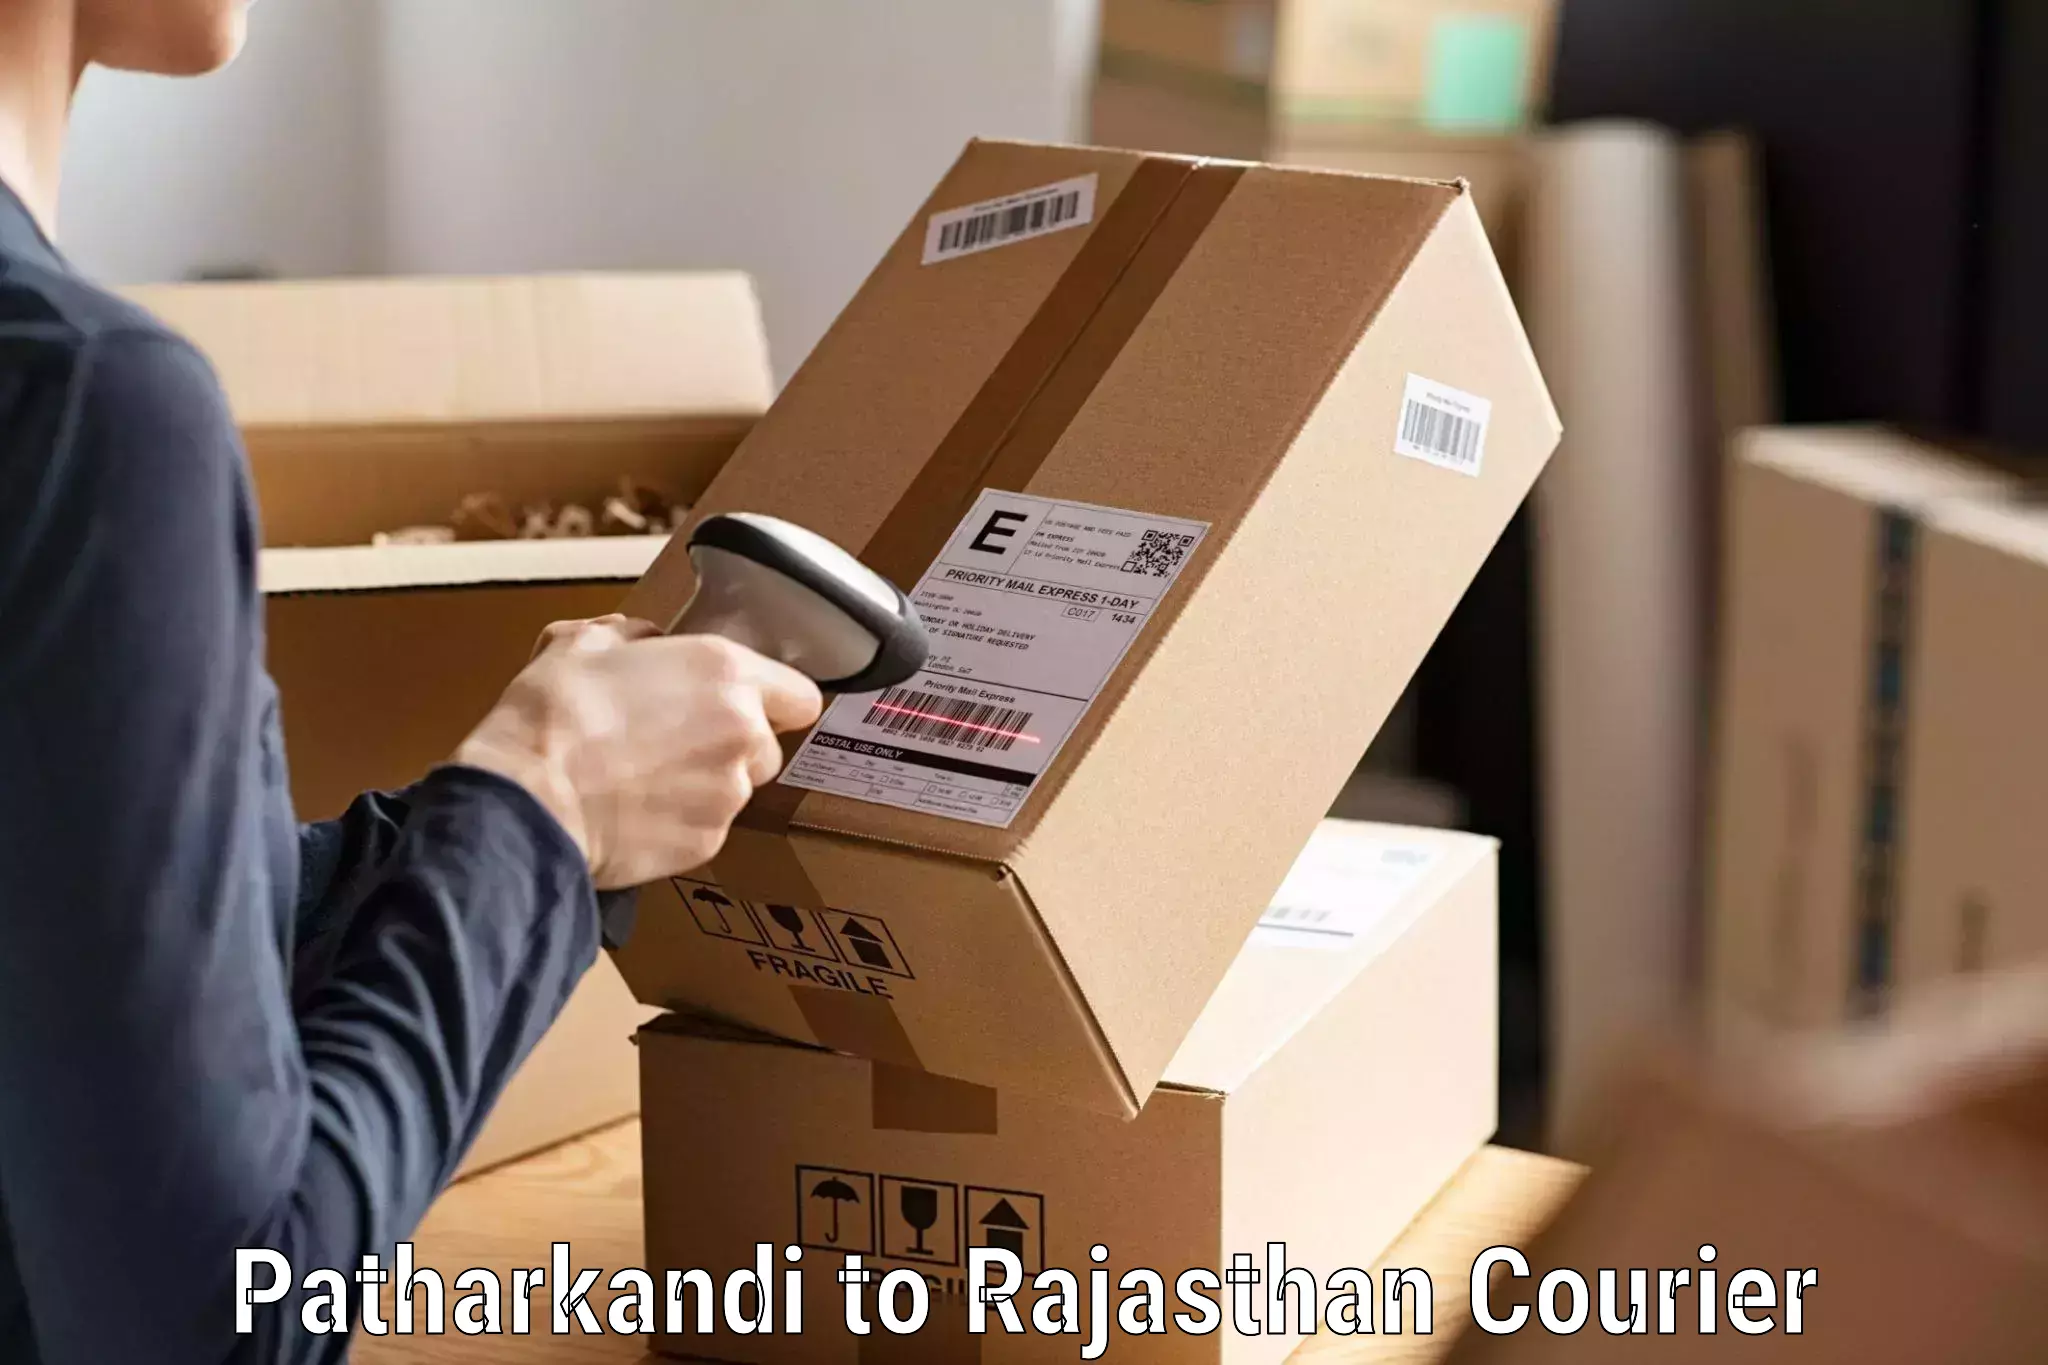 Professional courier handling in Patharkandi to Kumbhalgarh